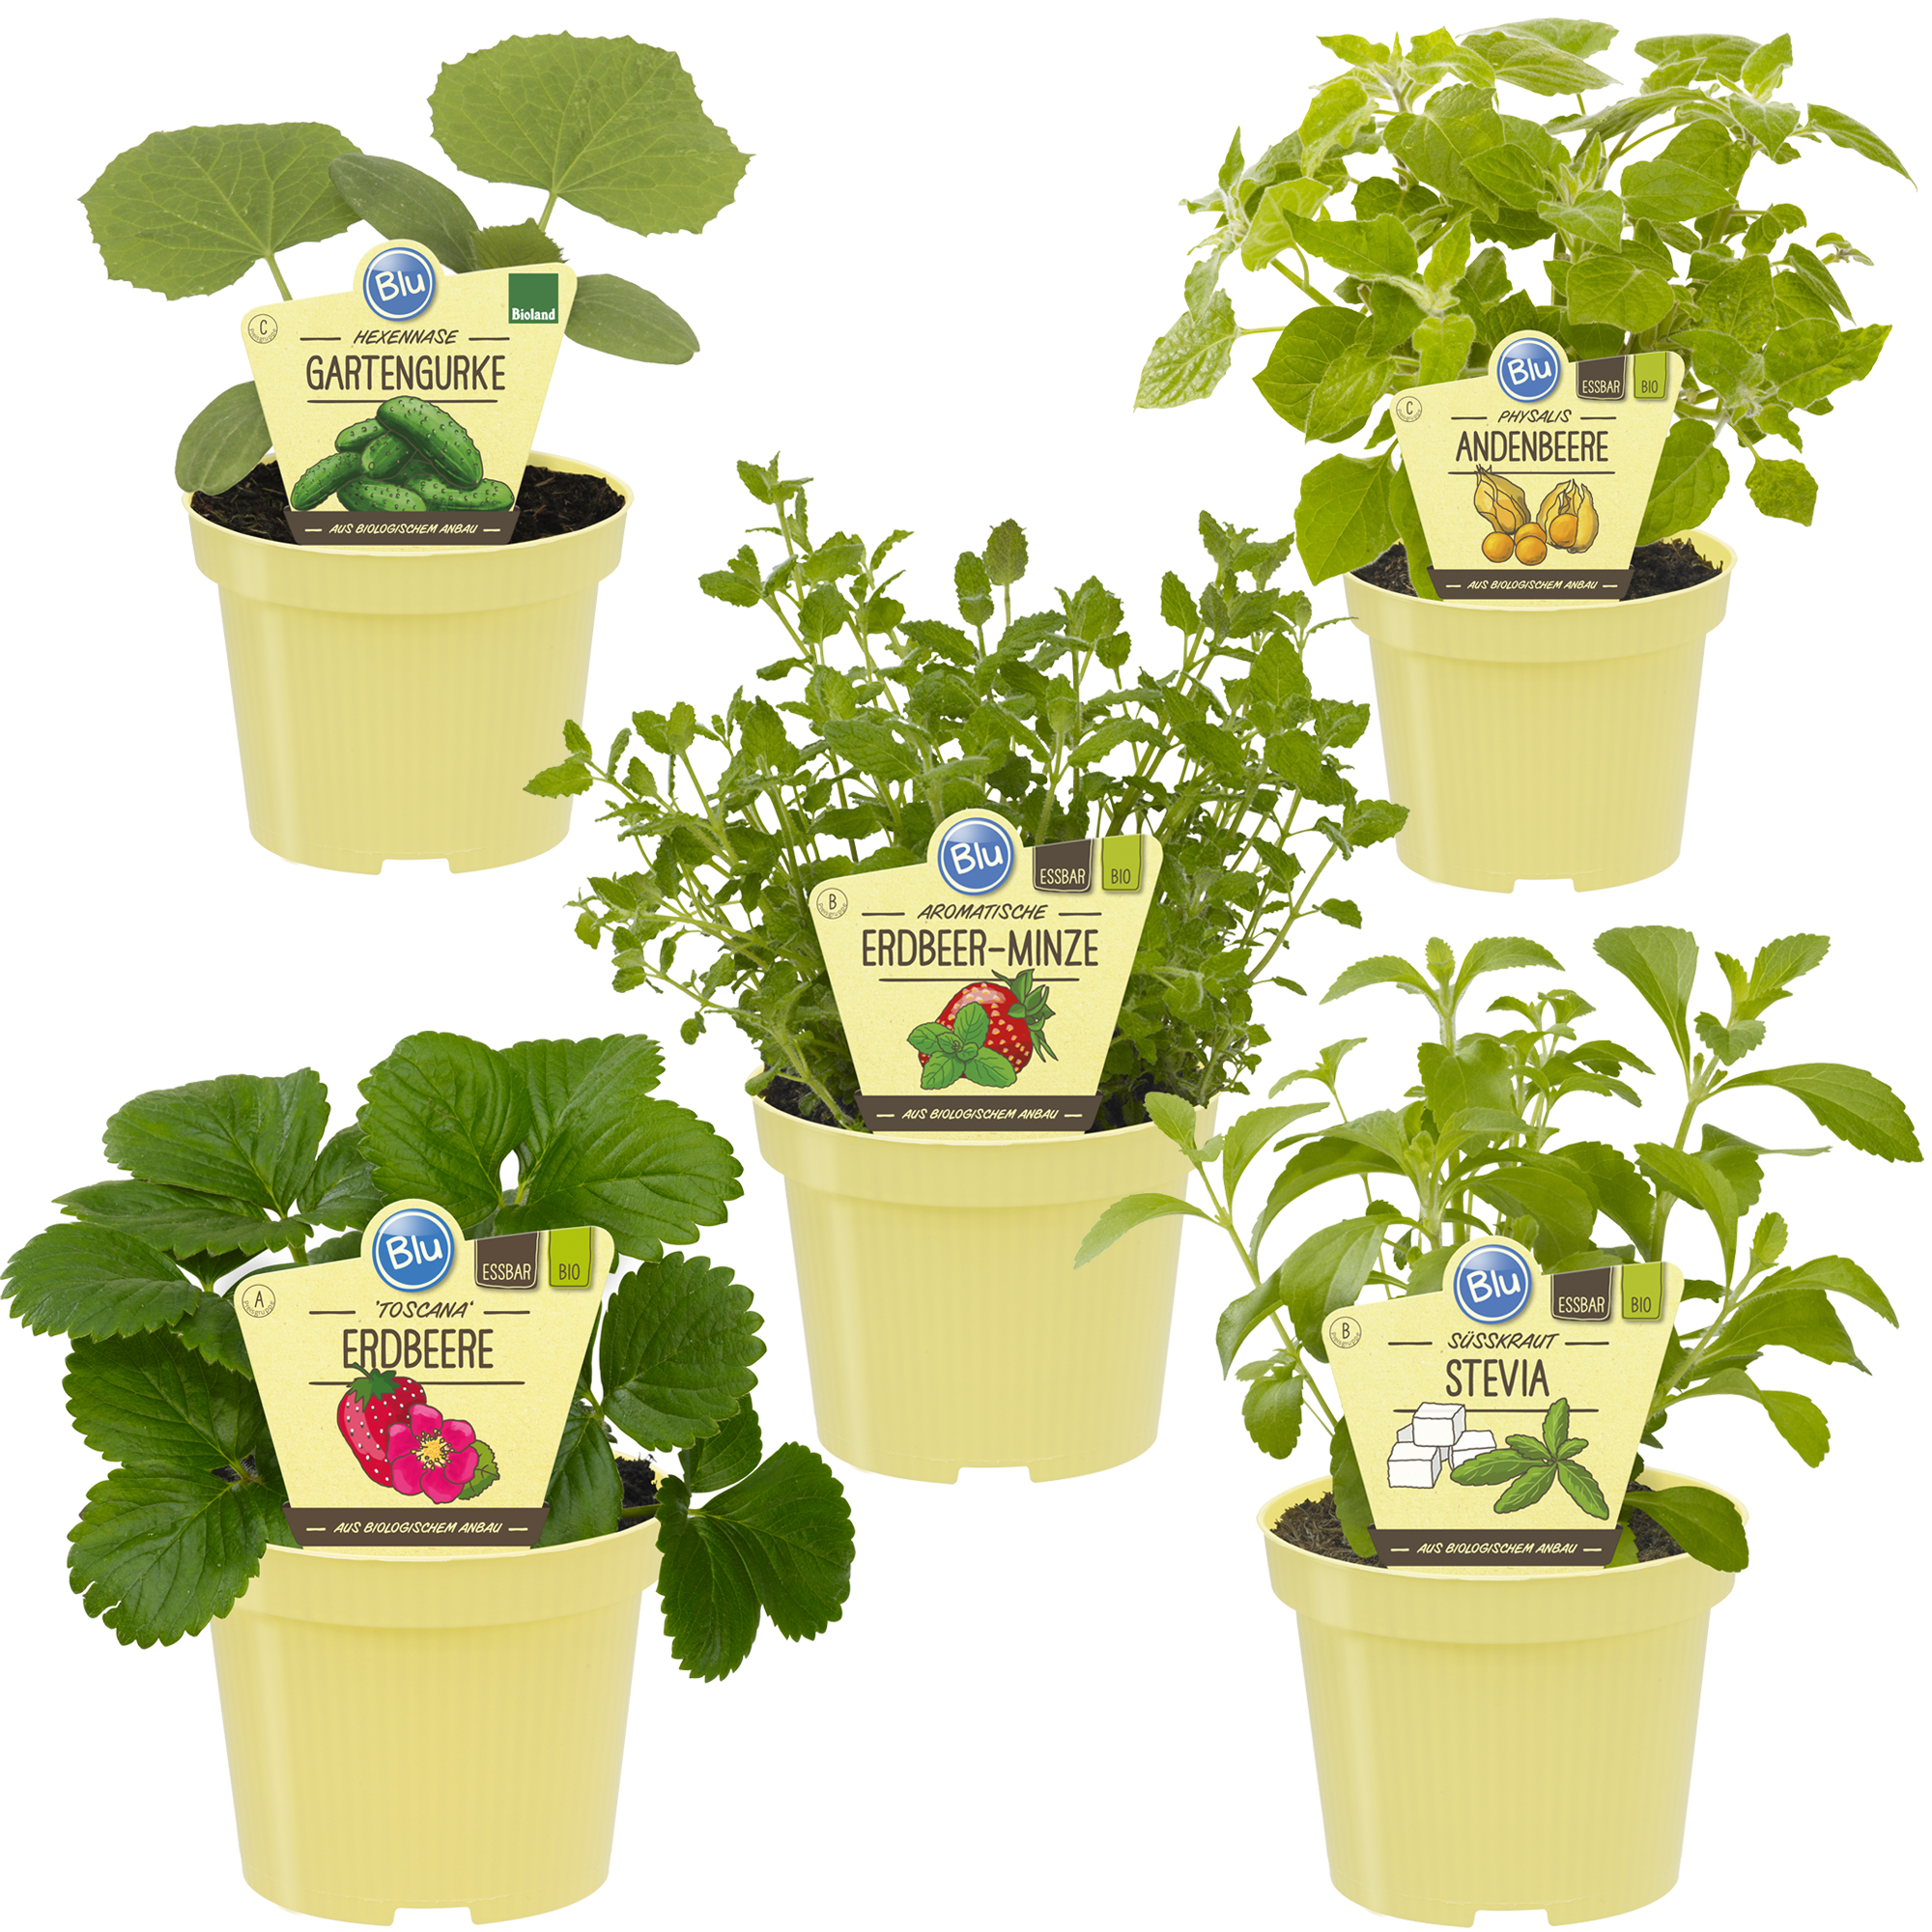 Bio-Gemüse 'Kinderbeet' 12 cm Topf, 5er-Set + product picture